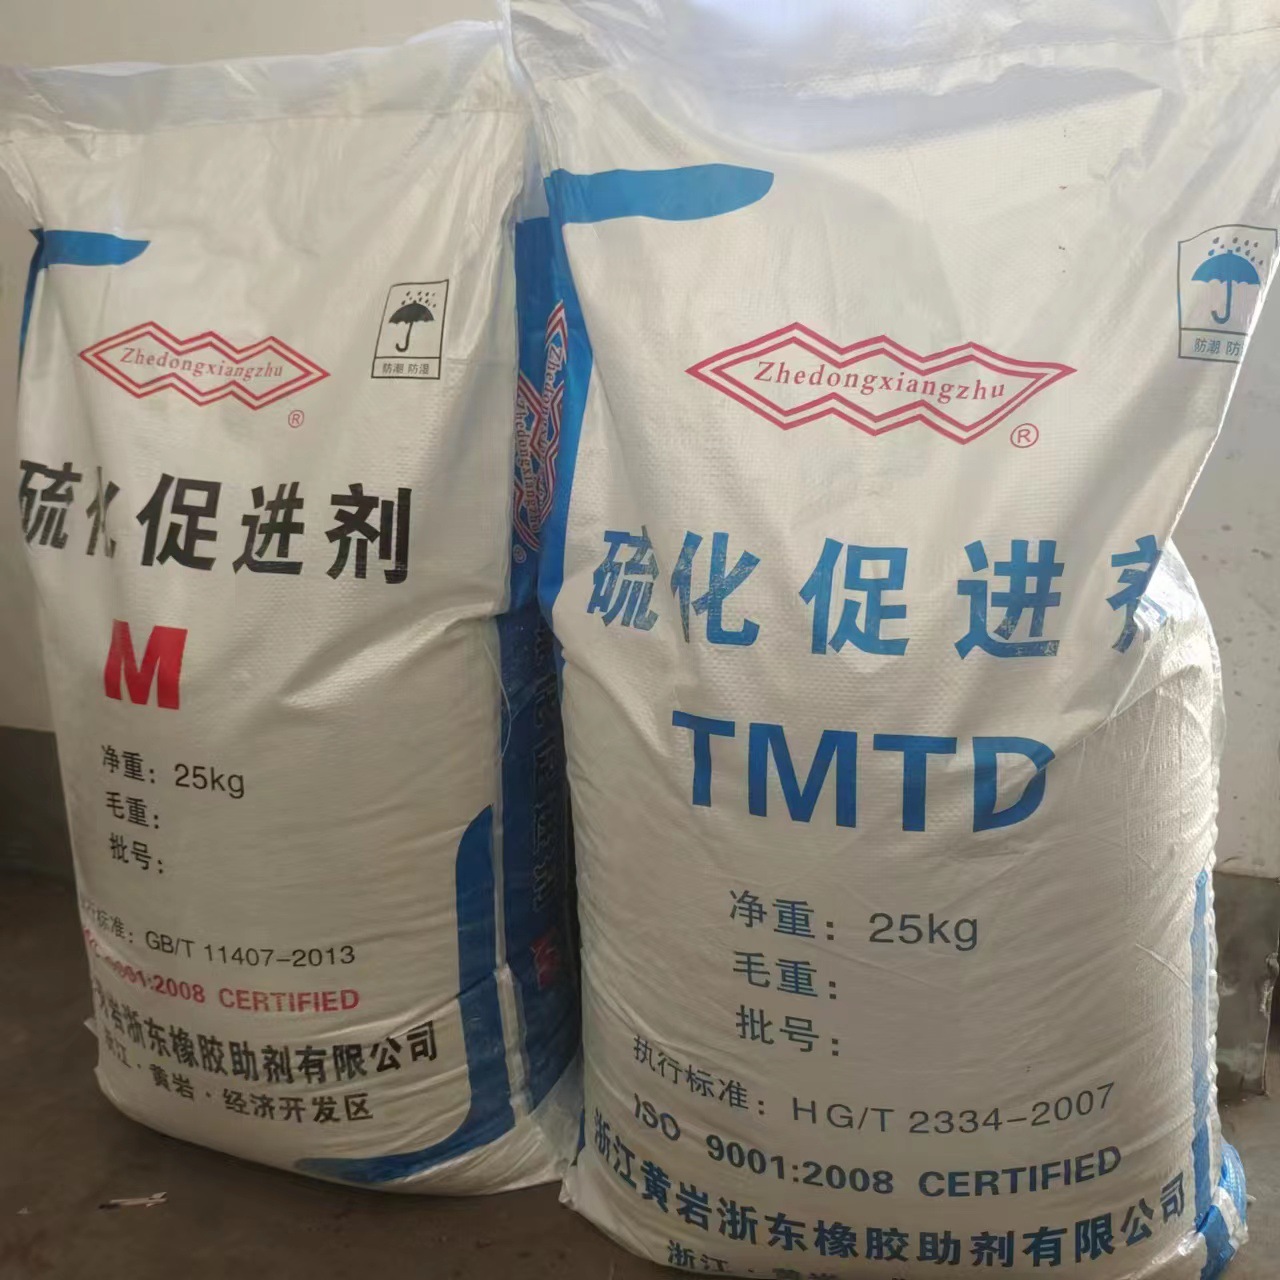 现货橡胶促进剂 橡胶硫化促进剂M  TMTD  DM  CZ 促进剂